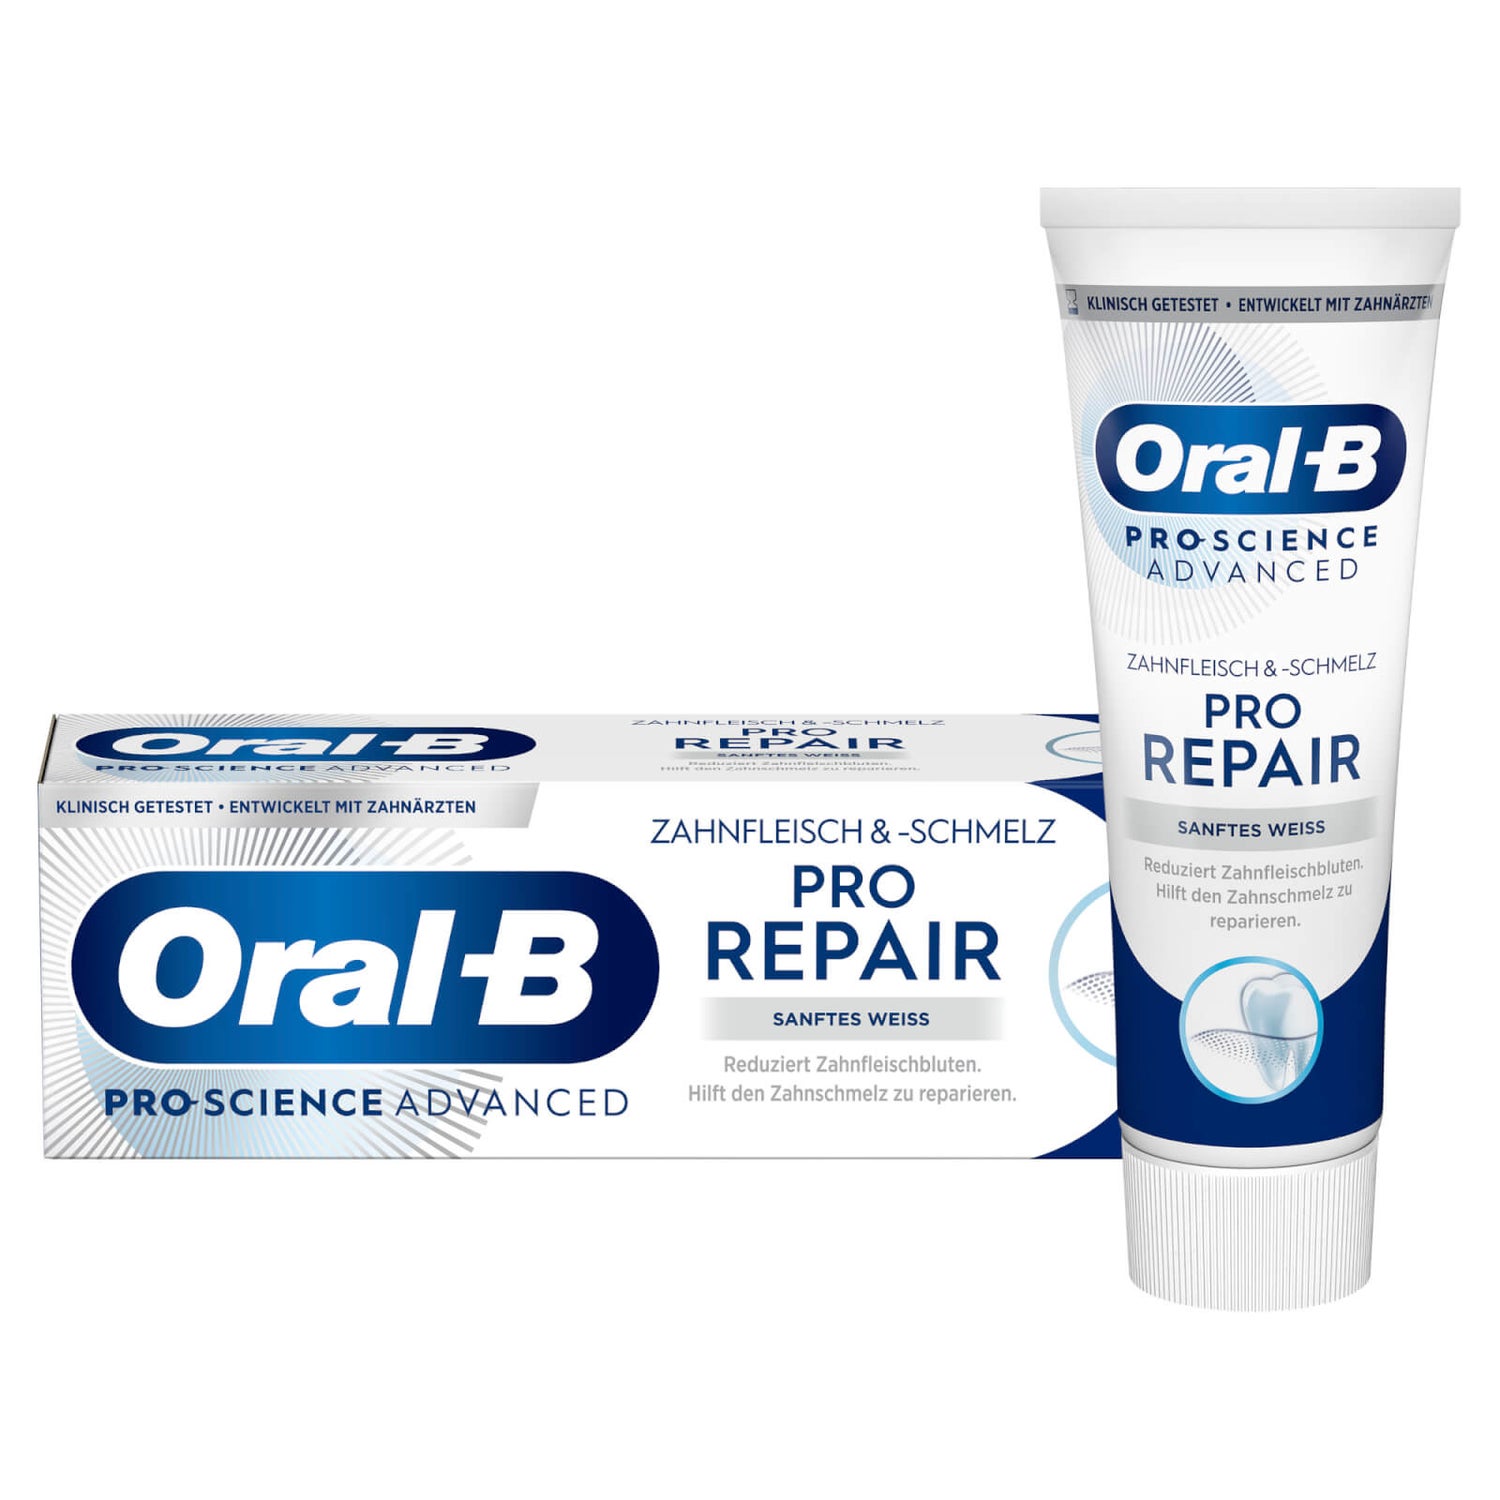 Oral-B PRO-SCIENCE ADVANCED Zahnfleisch & -schmelz Sanftes Weiß Zahncreme 75ml